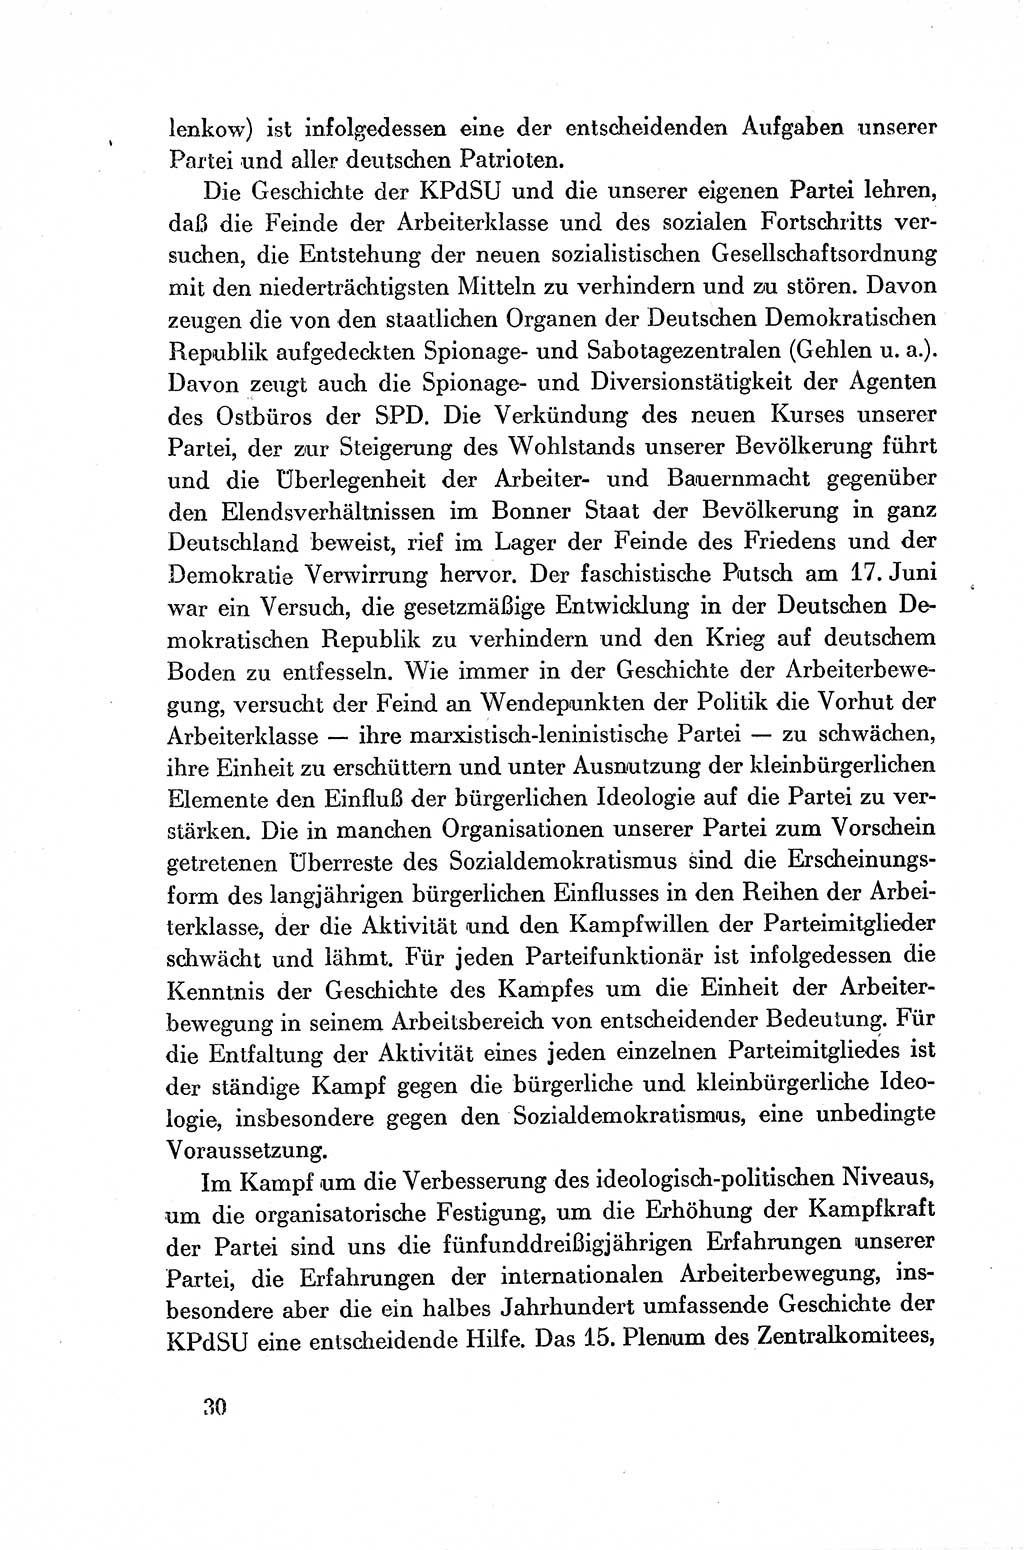 Dokumente der Sozialistischen Einheitspartei Deutschlands (SED) [Deutsche Demokratische Republik (DDR)] 1954-1955, Seite 30 (Dok. SED DDR 1954-1955, S. 30)